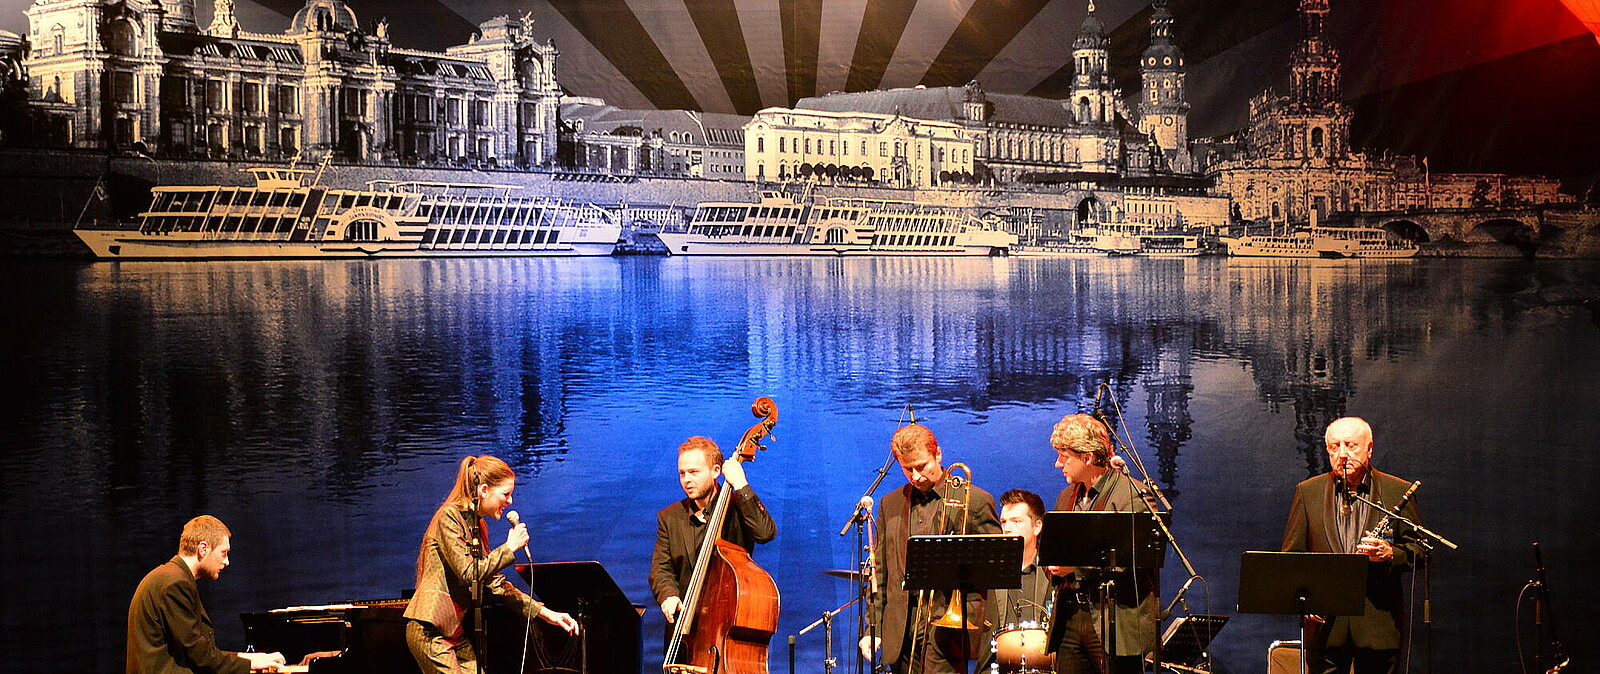 Abschluss Konzert Dixieland Festival - Der Jazz kommt ursprünglich aus den USA. In Dresden wurde er zu einem Volksfest und zahlreiche Gäste kommen zum Internationalen Dixieland-Festival nach Sachsen.